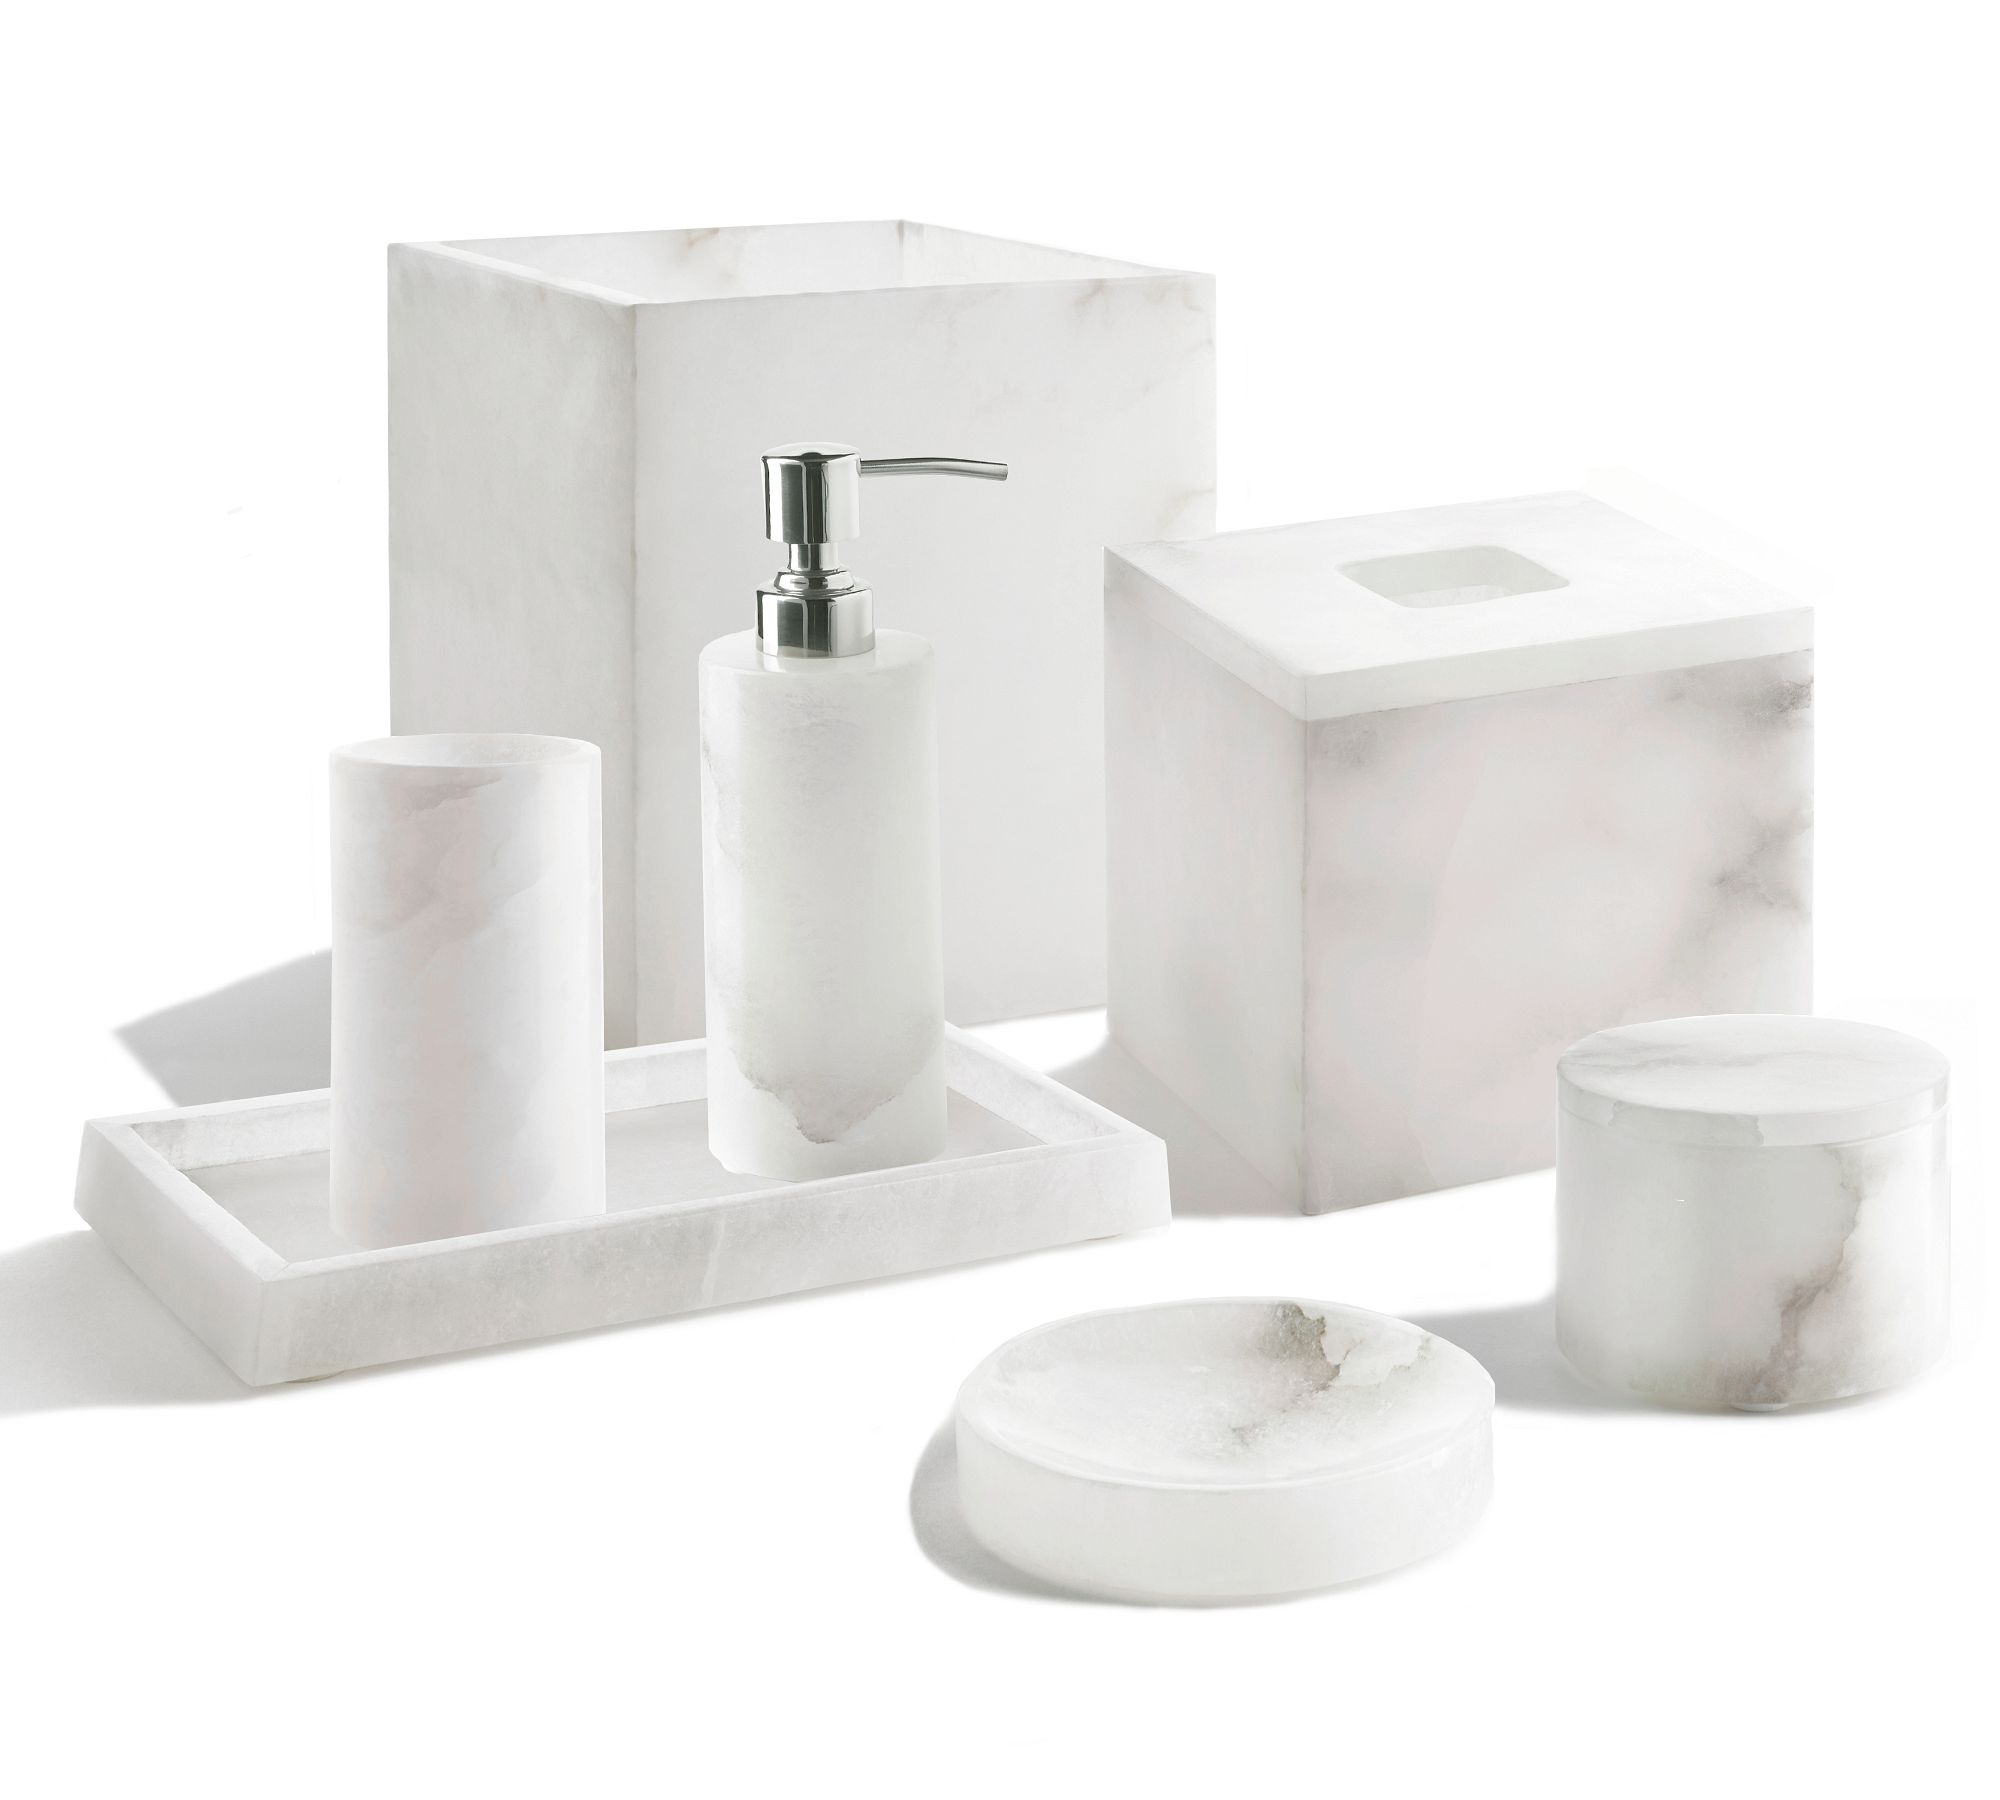 Kyran Handcrafted Alabaster Bathroom Accessories